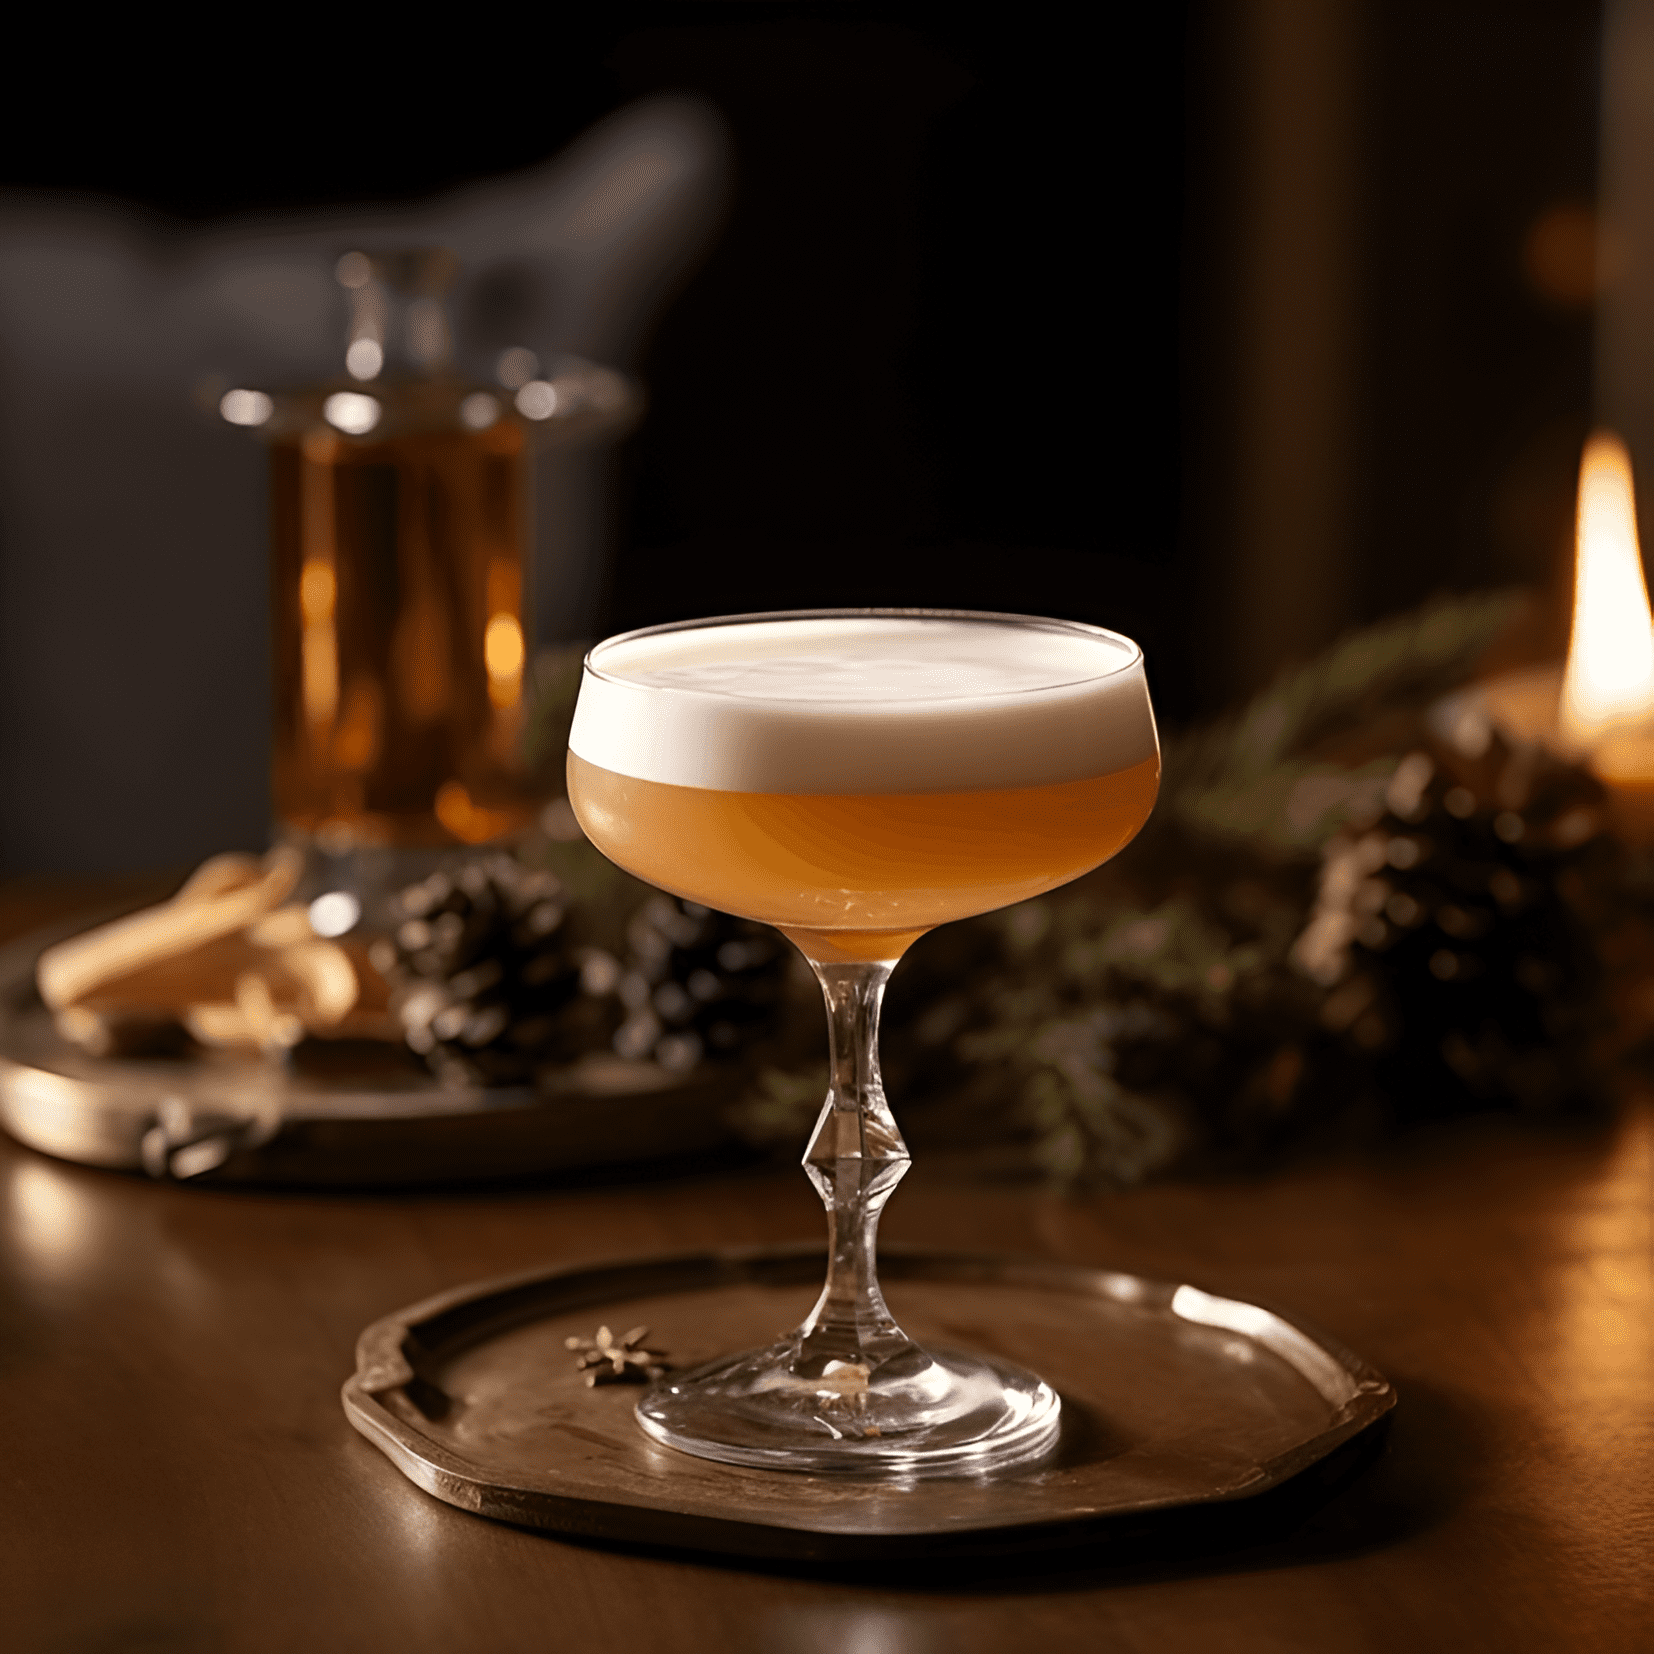 Bourbon Flip Cóctel Receta - El Bourbon Flip tiene un sabor rico, cremoso y suave con un toque de dulzura del jarabe simple. El bourbon agrega un sabor cálido, agradable y ligeramente picante, mientras que el huevo le da a la bebida una textura espumosa y aterciopelada.